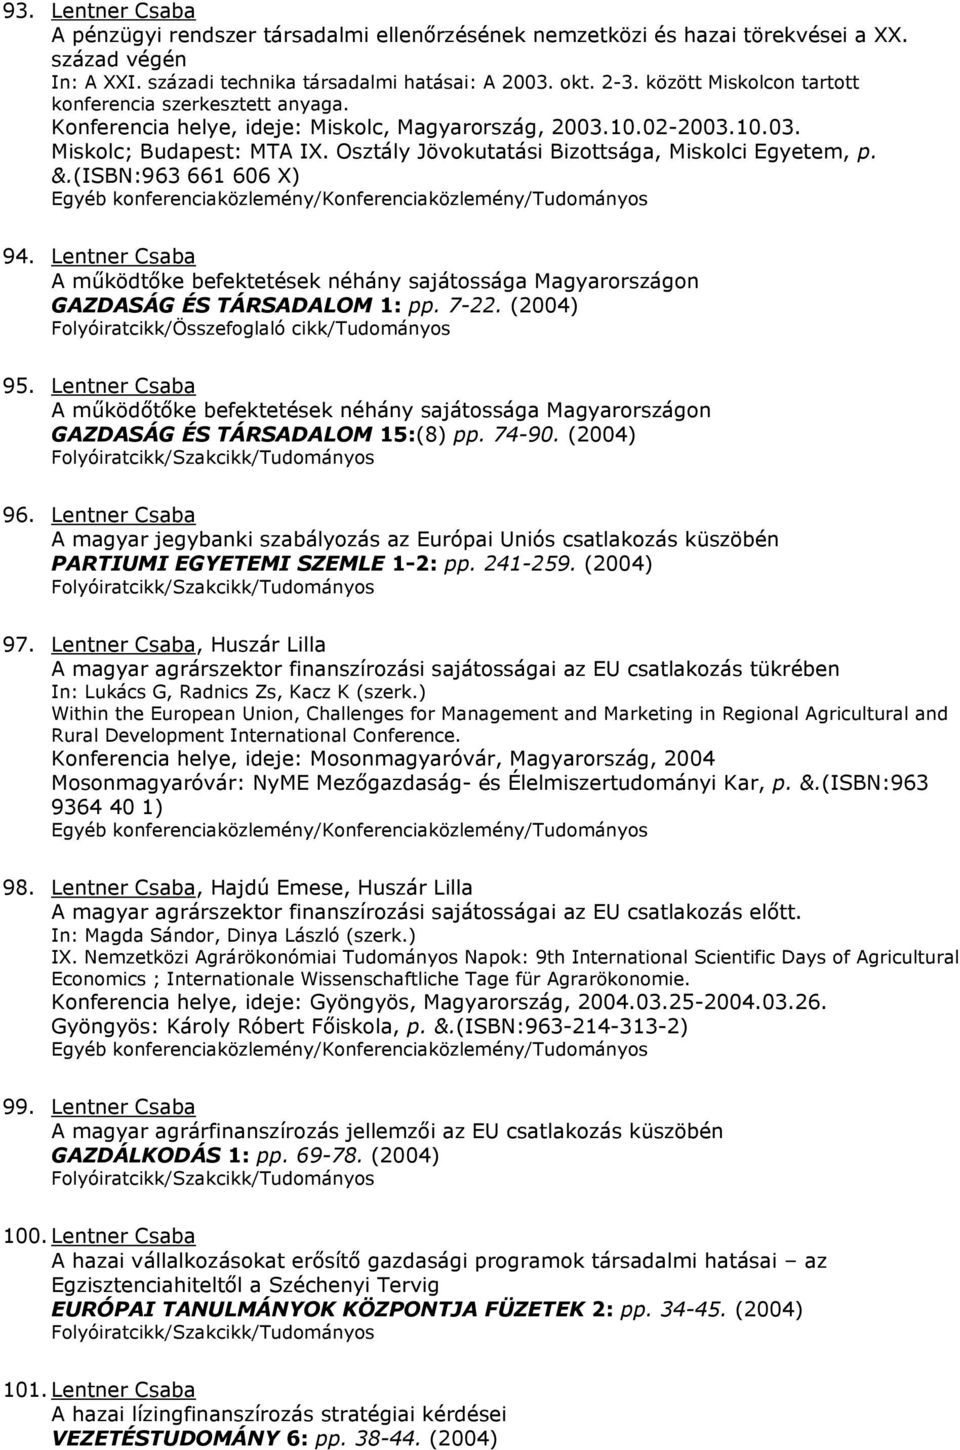 Osztály Jövokutatási Bizottsága, Miskolci Egyetem, p. &.(ISBN:963 661 606 X) 94. Lentner Csaba A működtőke befektetések néhány sajátossága Magyarországon GAZDASÁG ÉS TÁRSADALOM 1: pp. 7-22. (2004) 95.